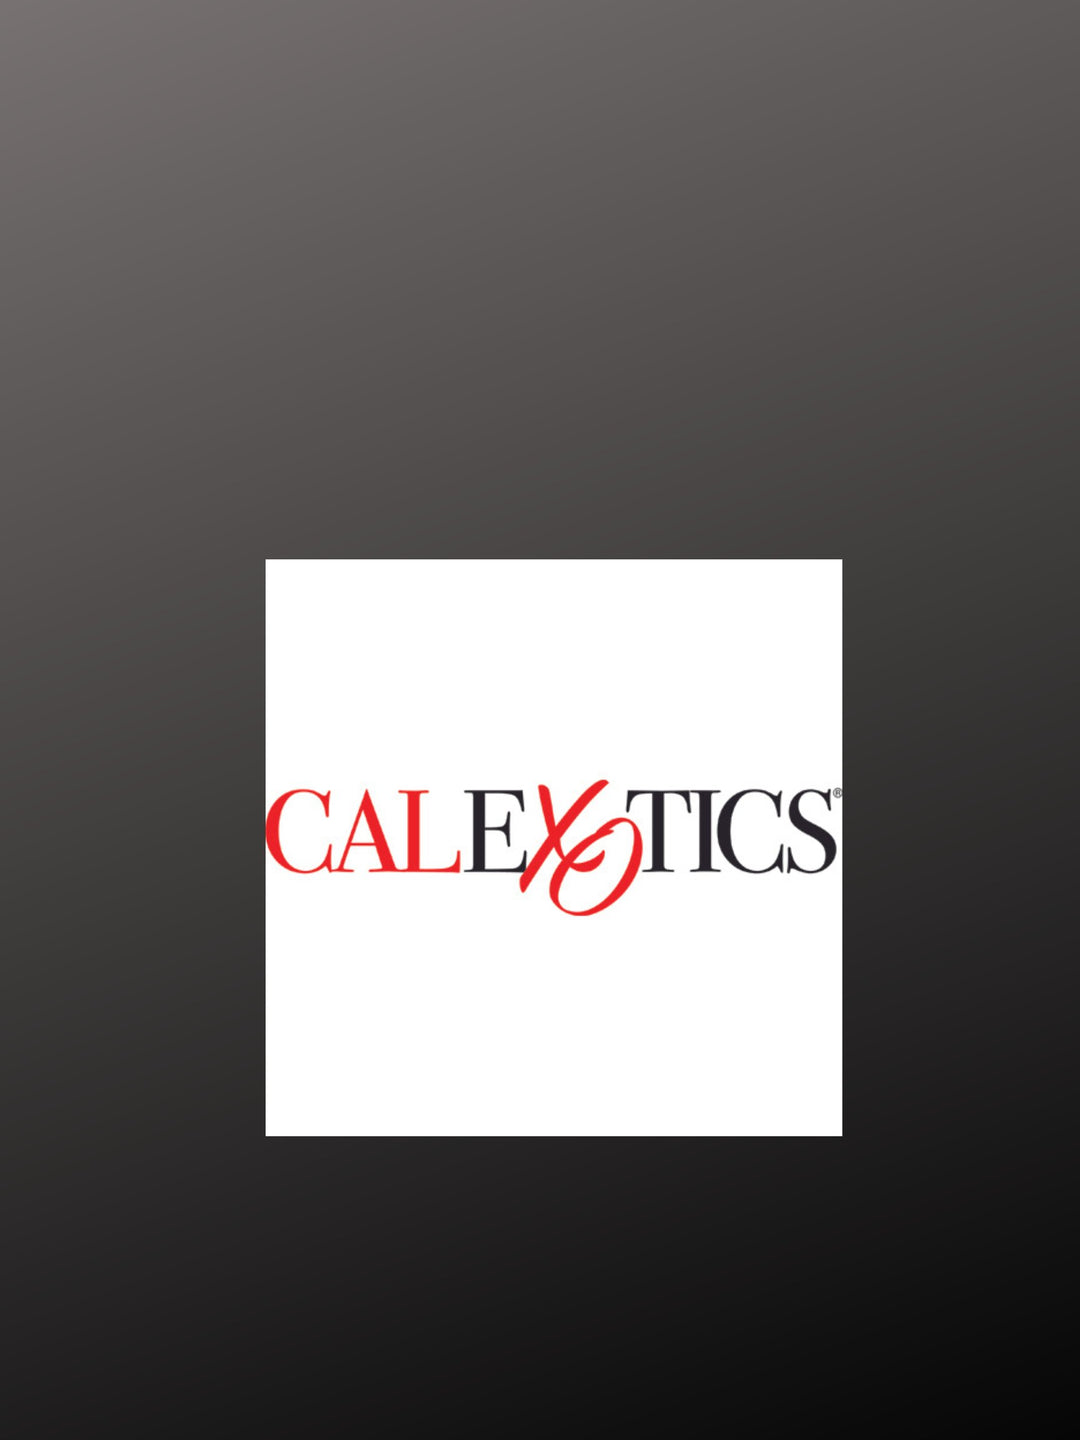 Calexotics